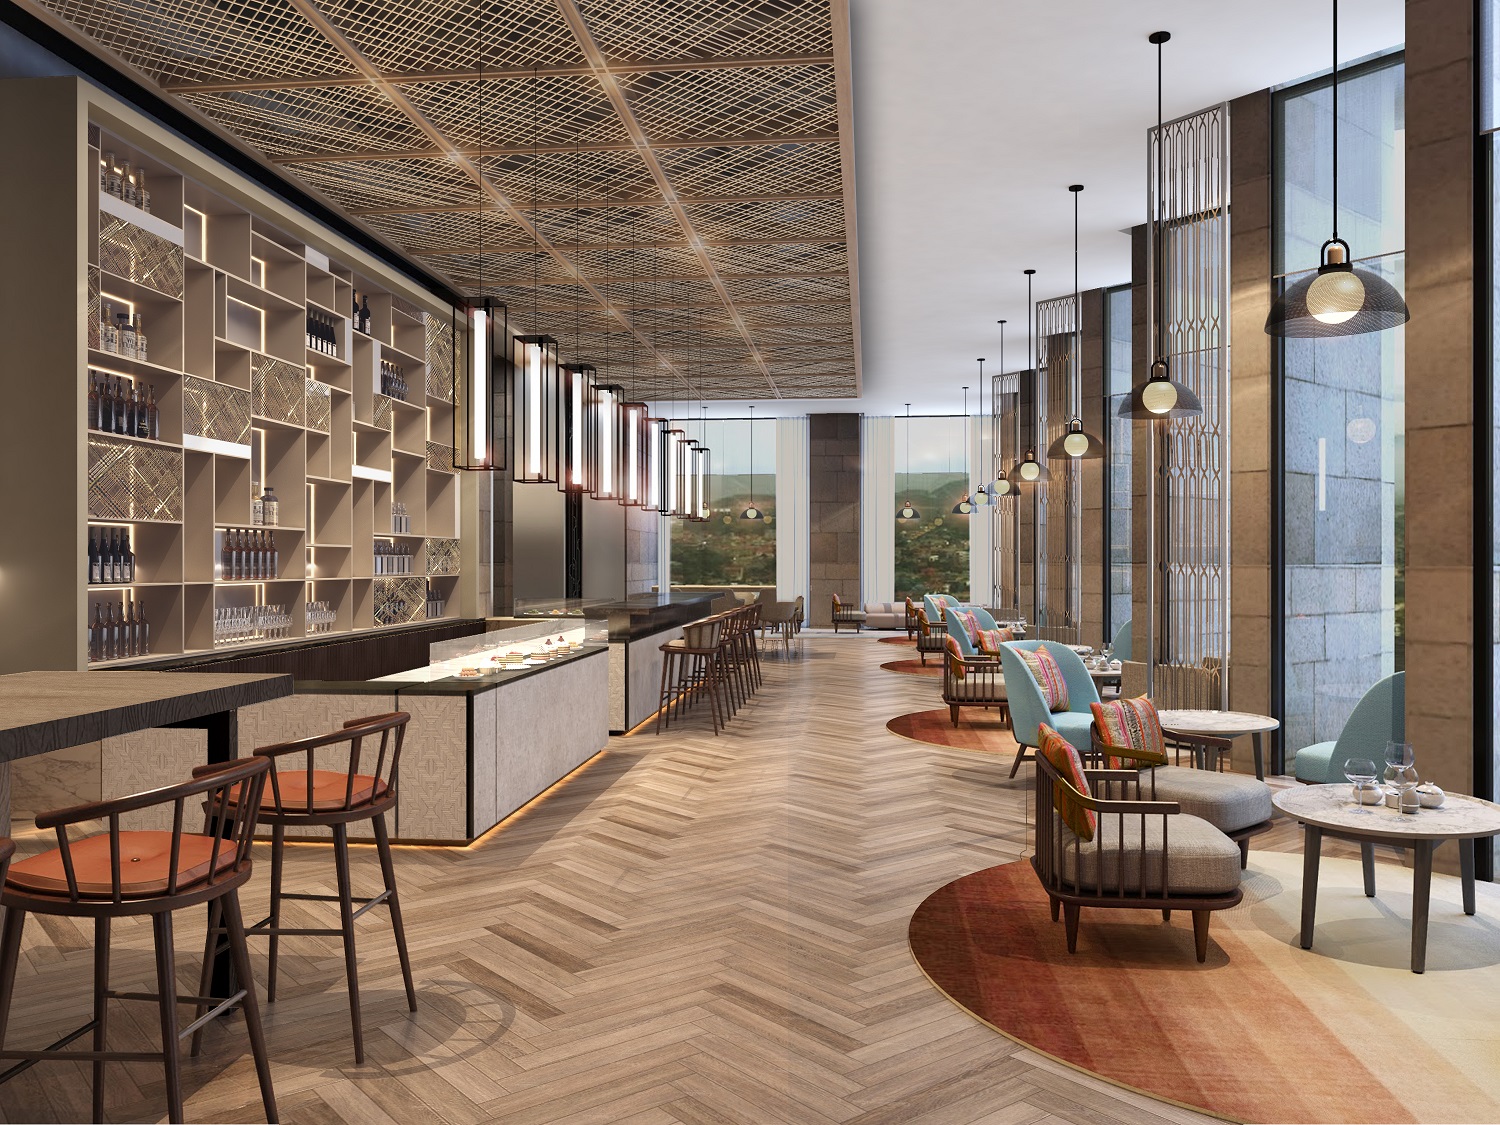 Khách sạn Crowne Plaza Vinh Yen City Centre dự kiến khai trương trong năm 2022 sẽ là điểm dừng chân lý tưởng dành cho khách hàng doanh nghiệp đến Vĩnh Phúc